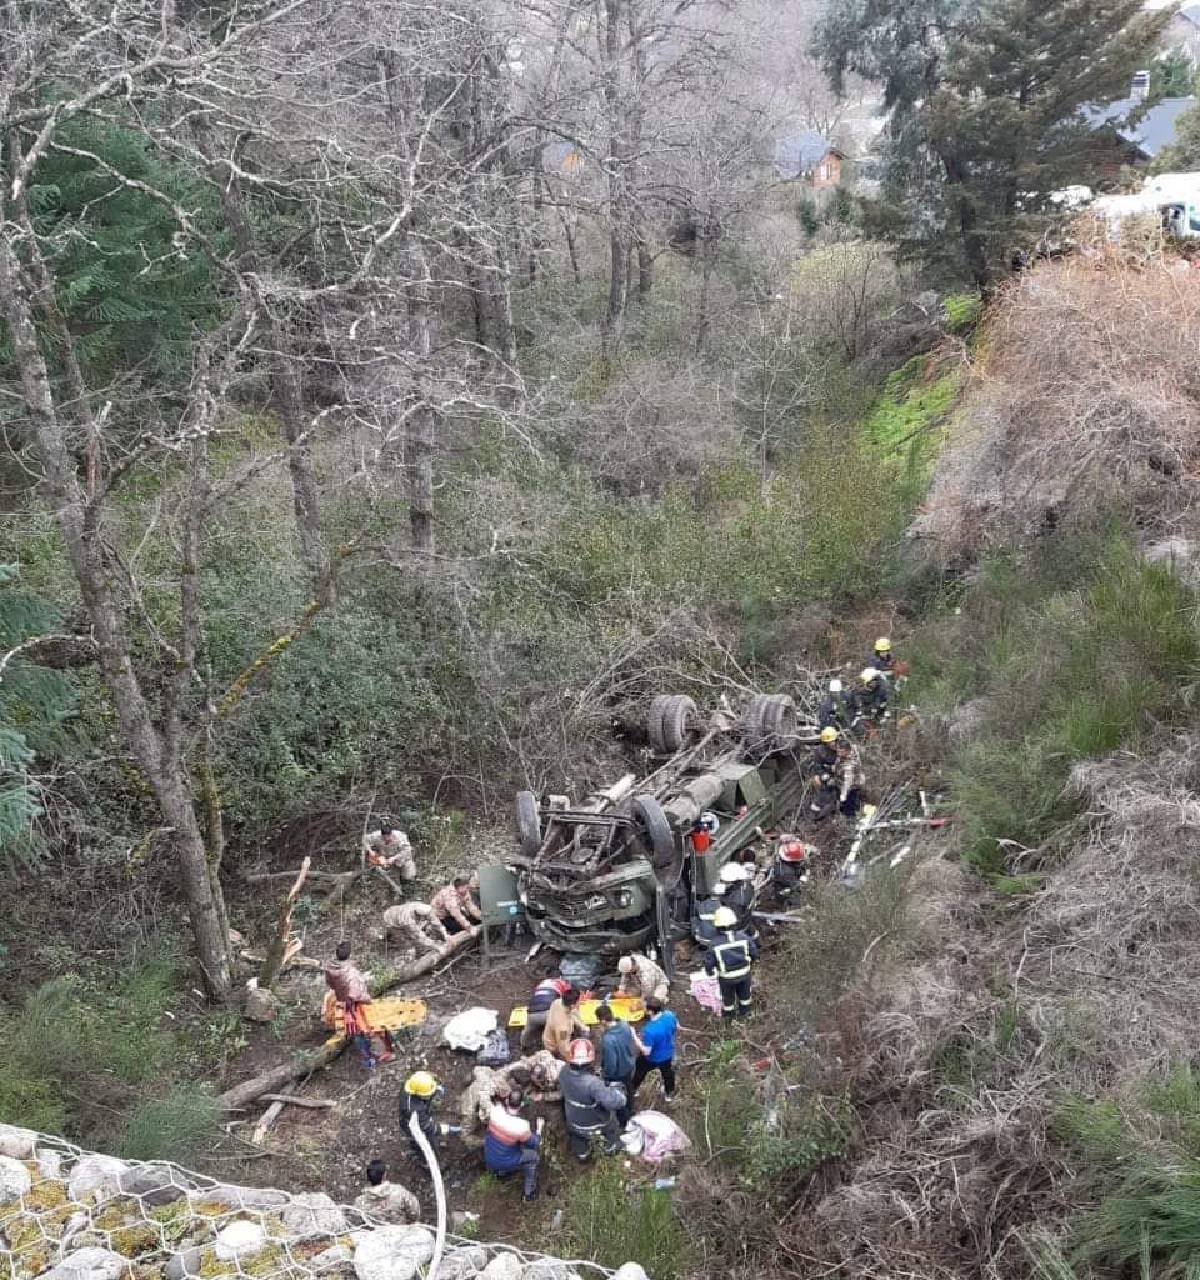  El accidente ocurrió sobre la Ruta 62 camino hacia Lolog, en dirección a San Martín de los Andes. Foto: Archivo